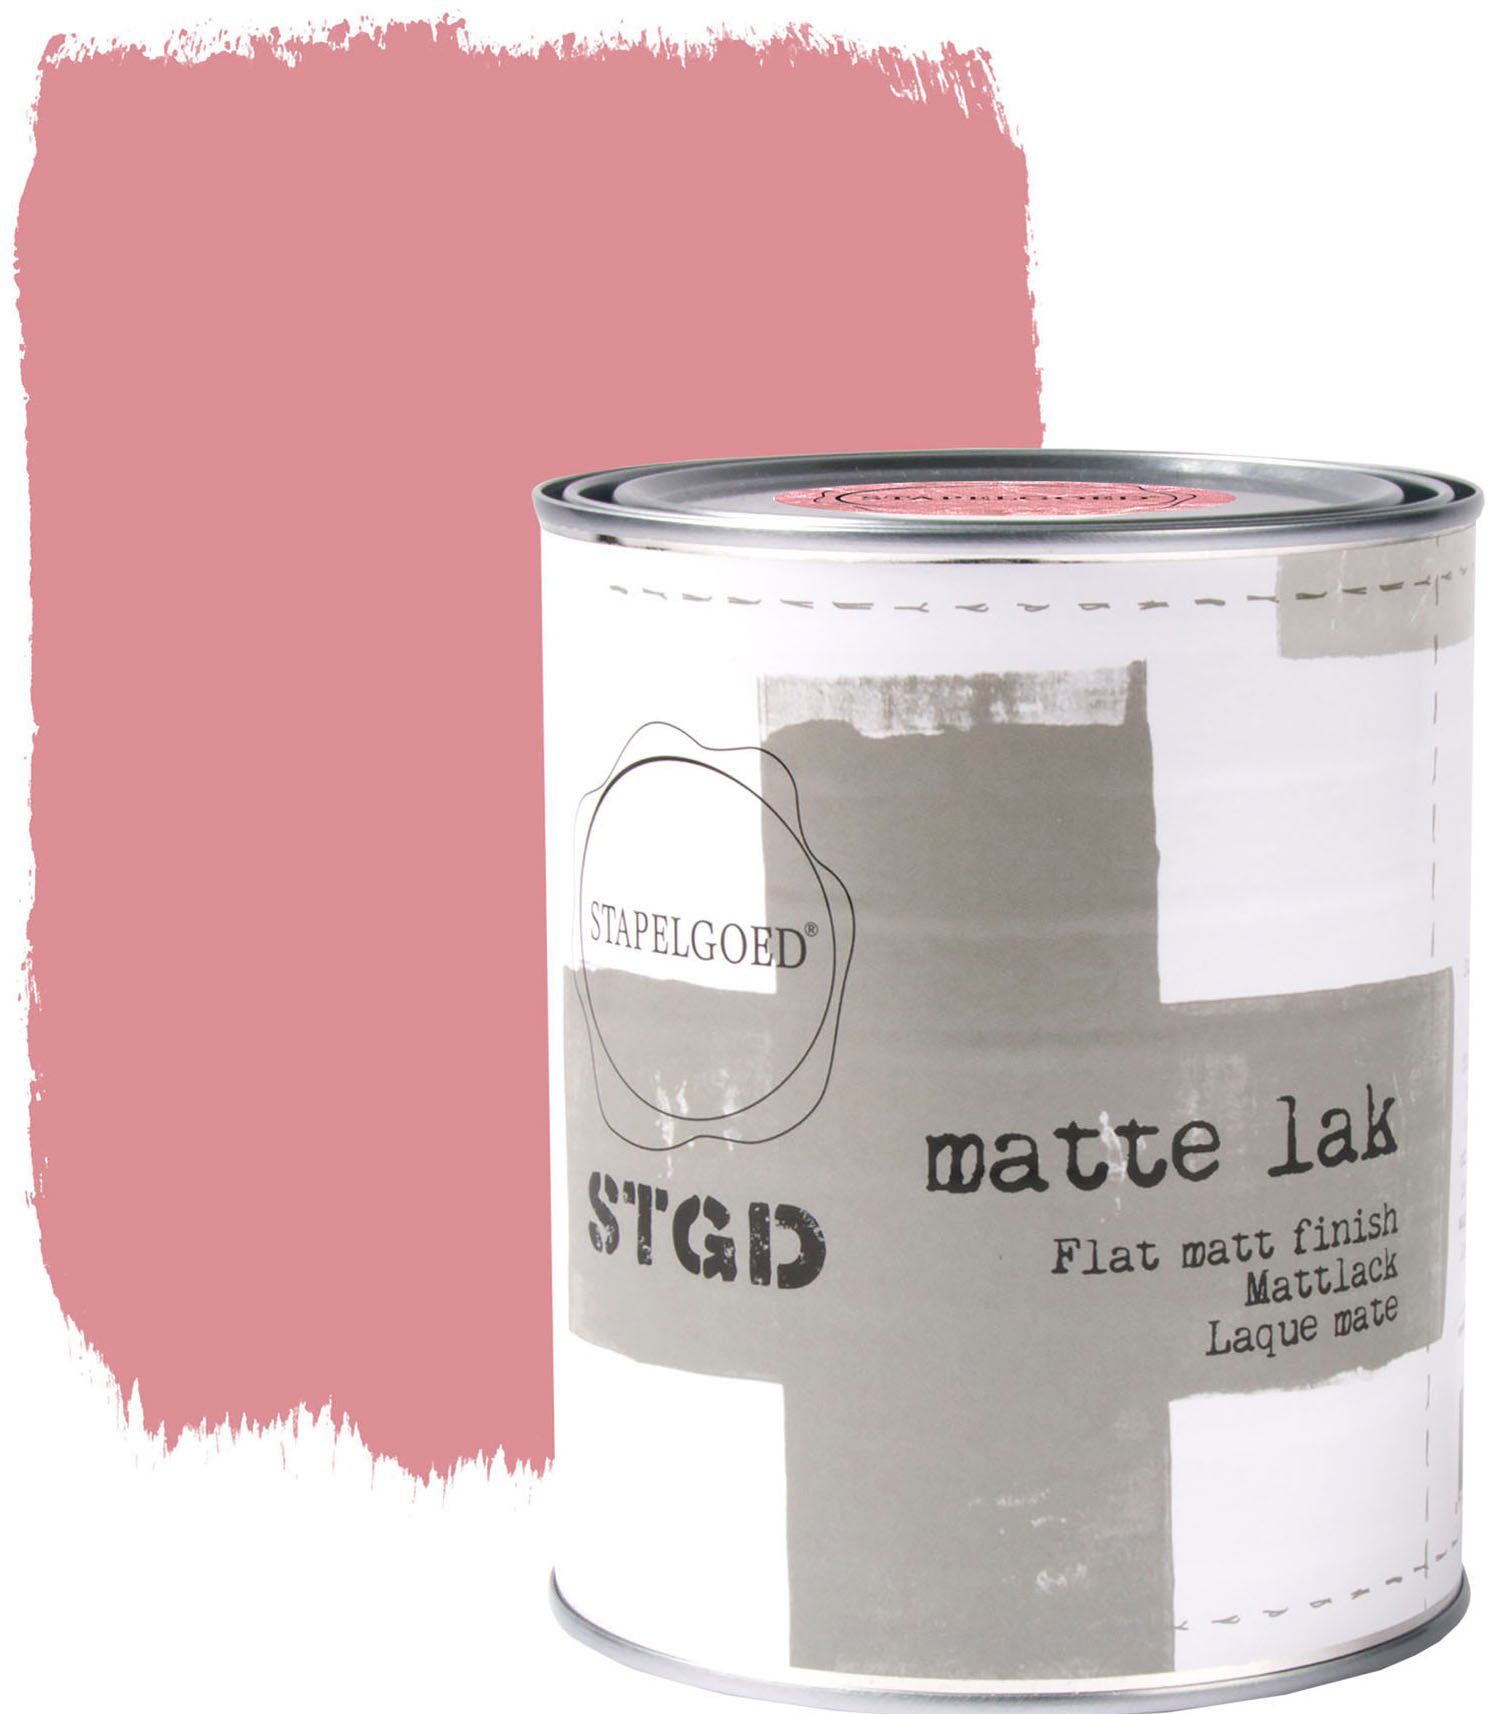 STAPELGOED Wandfarbe STGD muurverf rose shades, extra matt, hochdeckend und waschbeständig, 2,5 Liter Magnolia